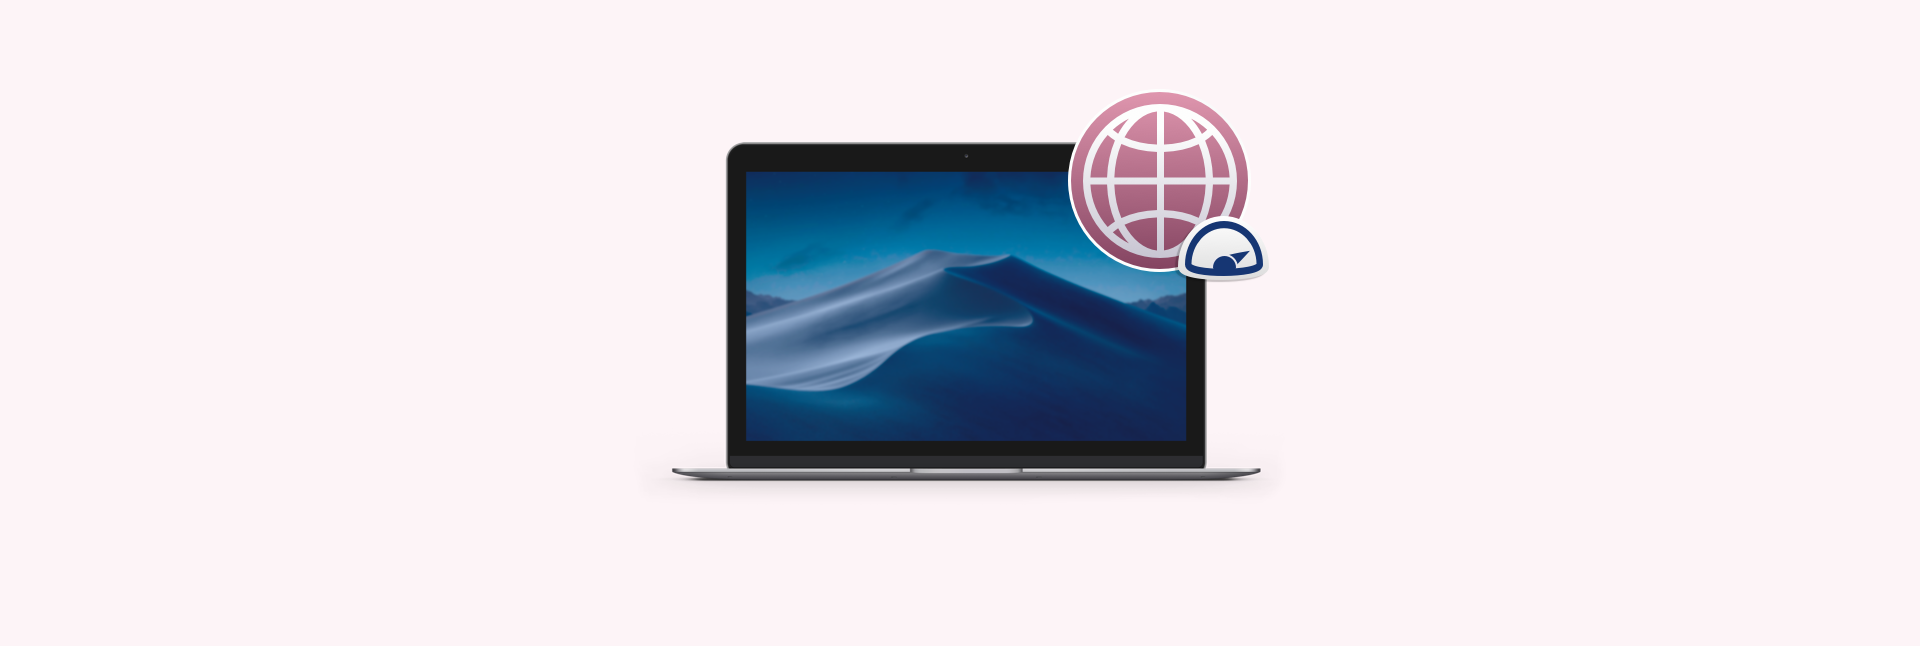 mac runs slow switching users